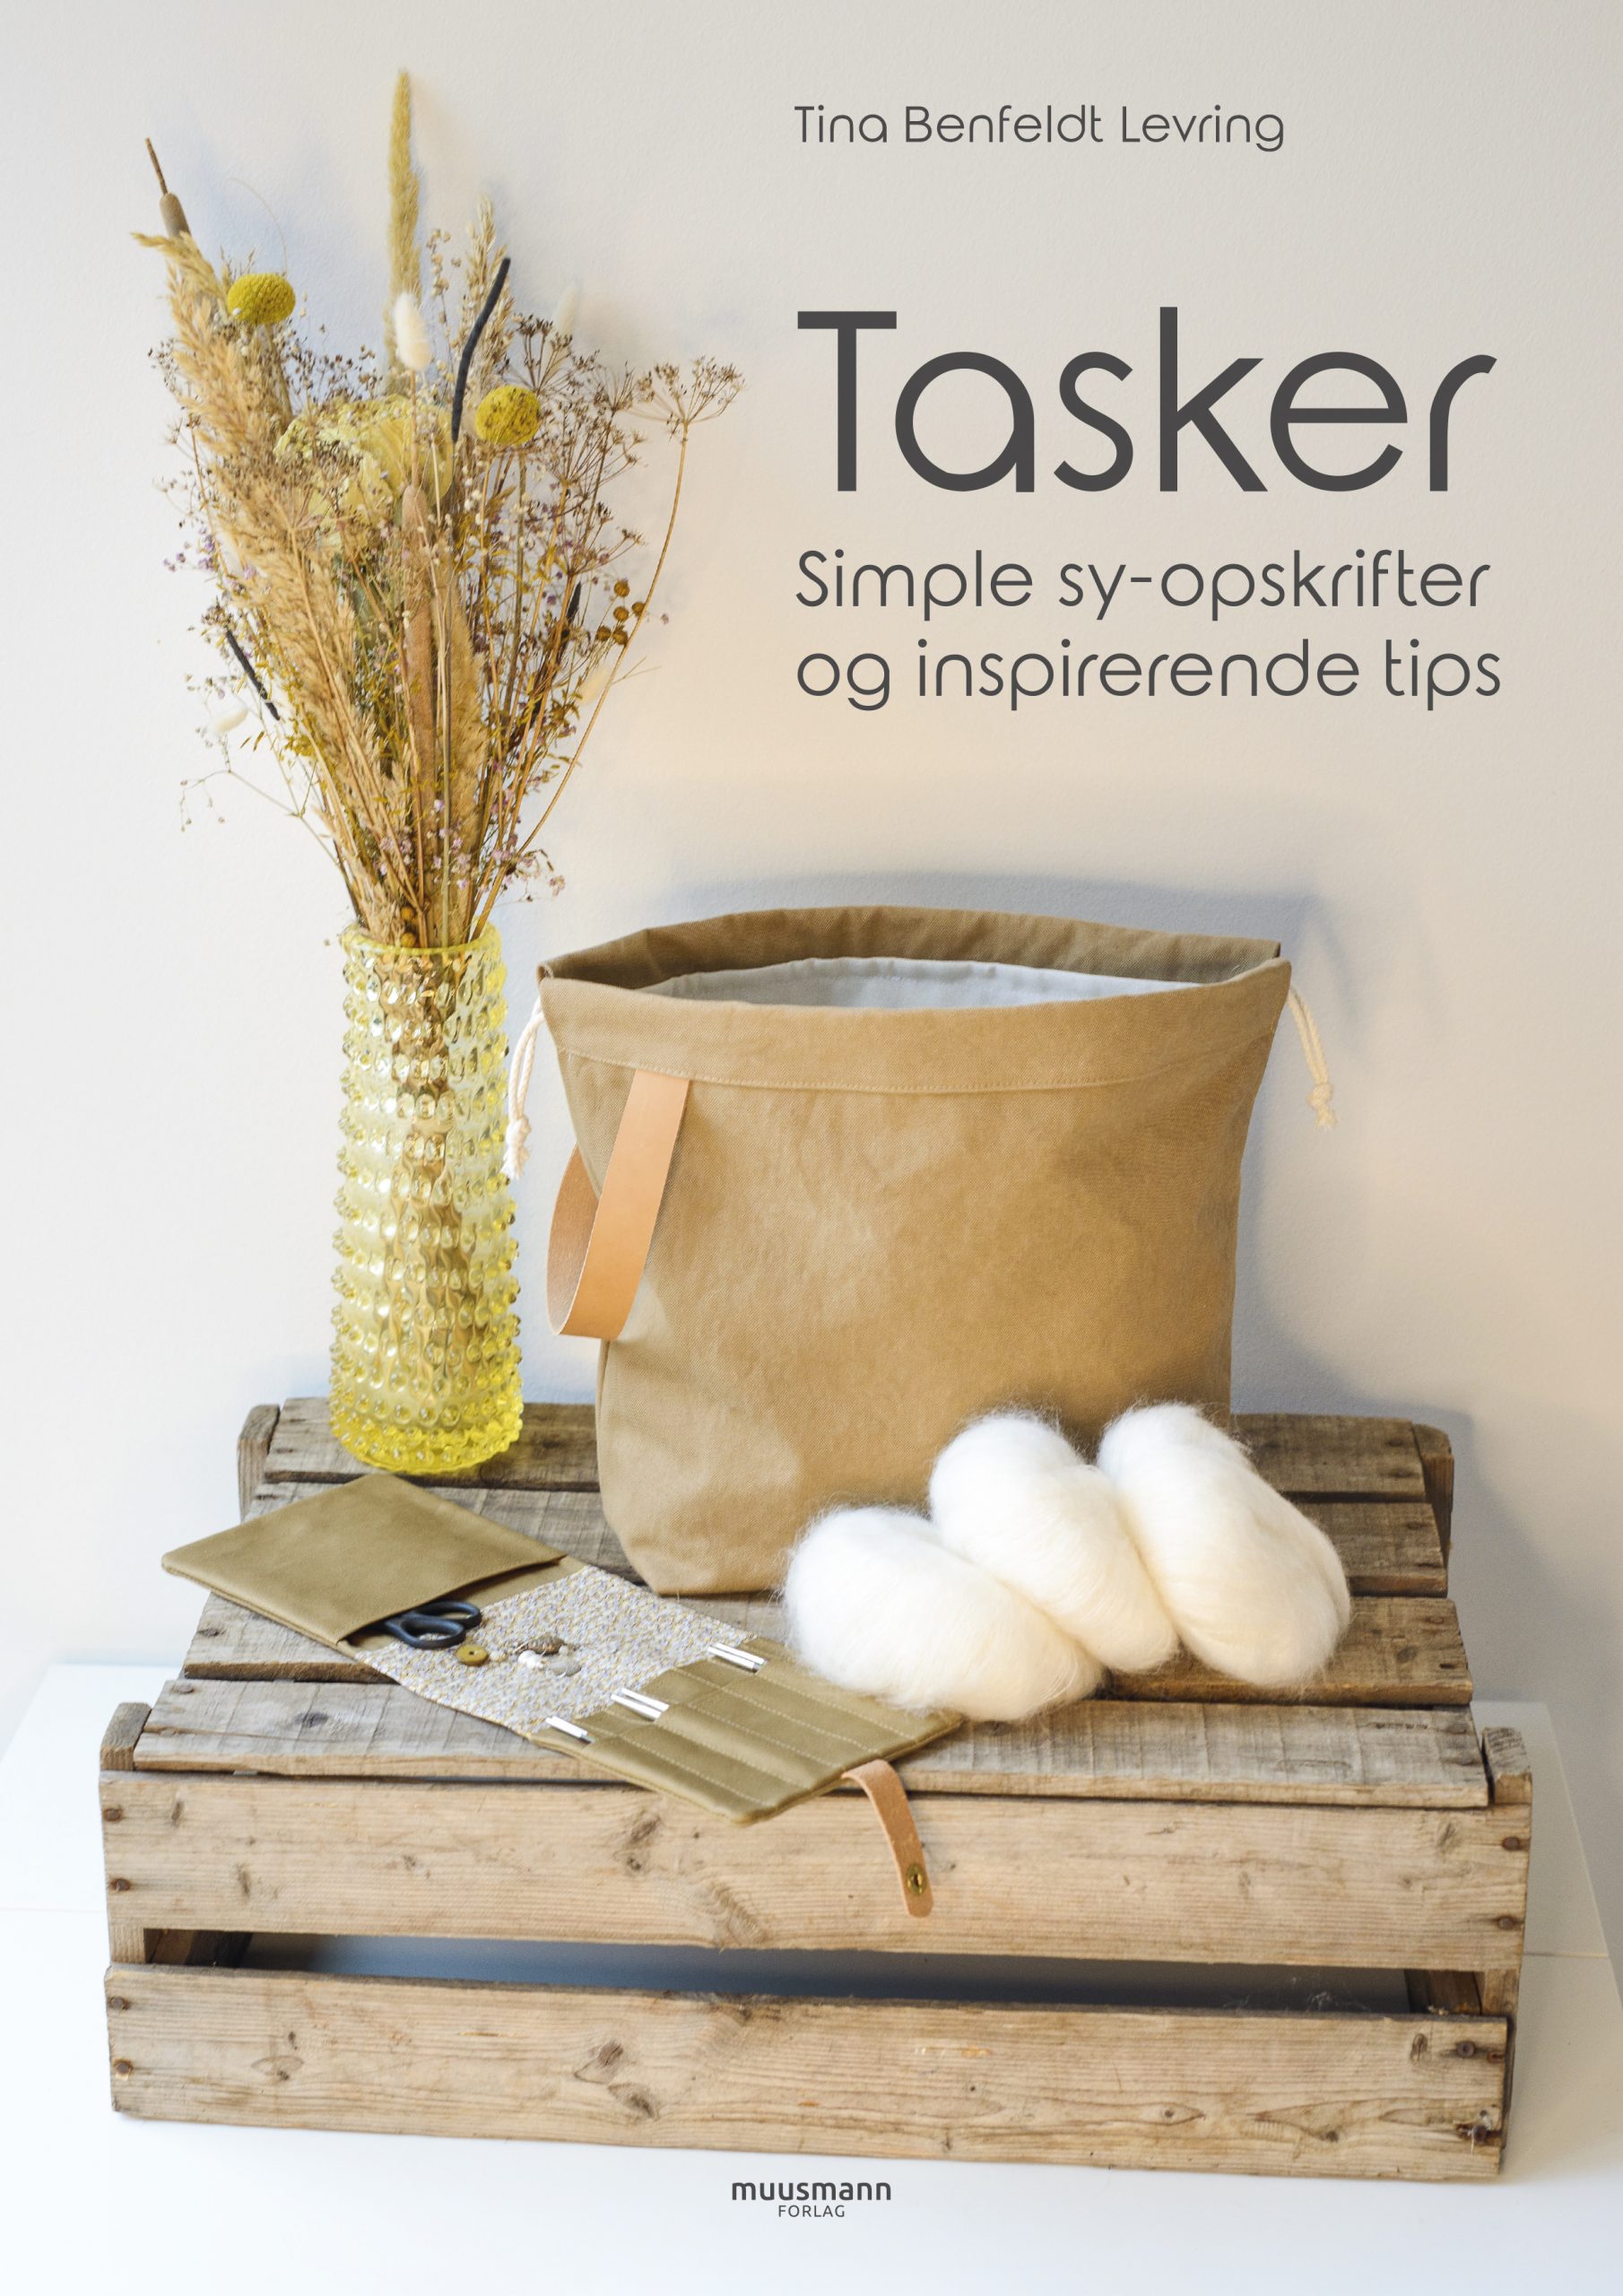 Tasker Simple sy-opskrifter og inspirerende tips af Tina Benfeldt Levring, opskrifter på tasker, Muusmann Forlag